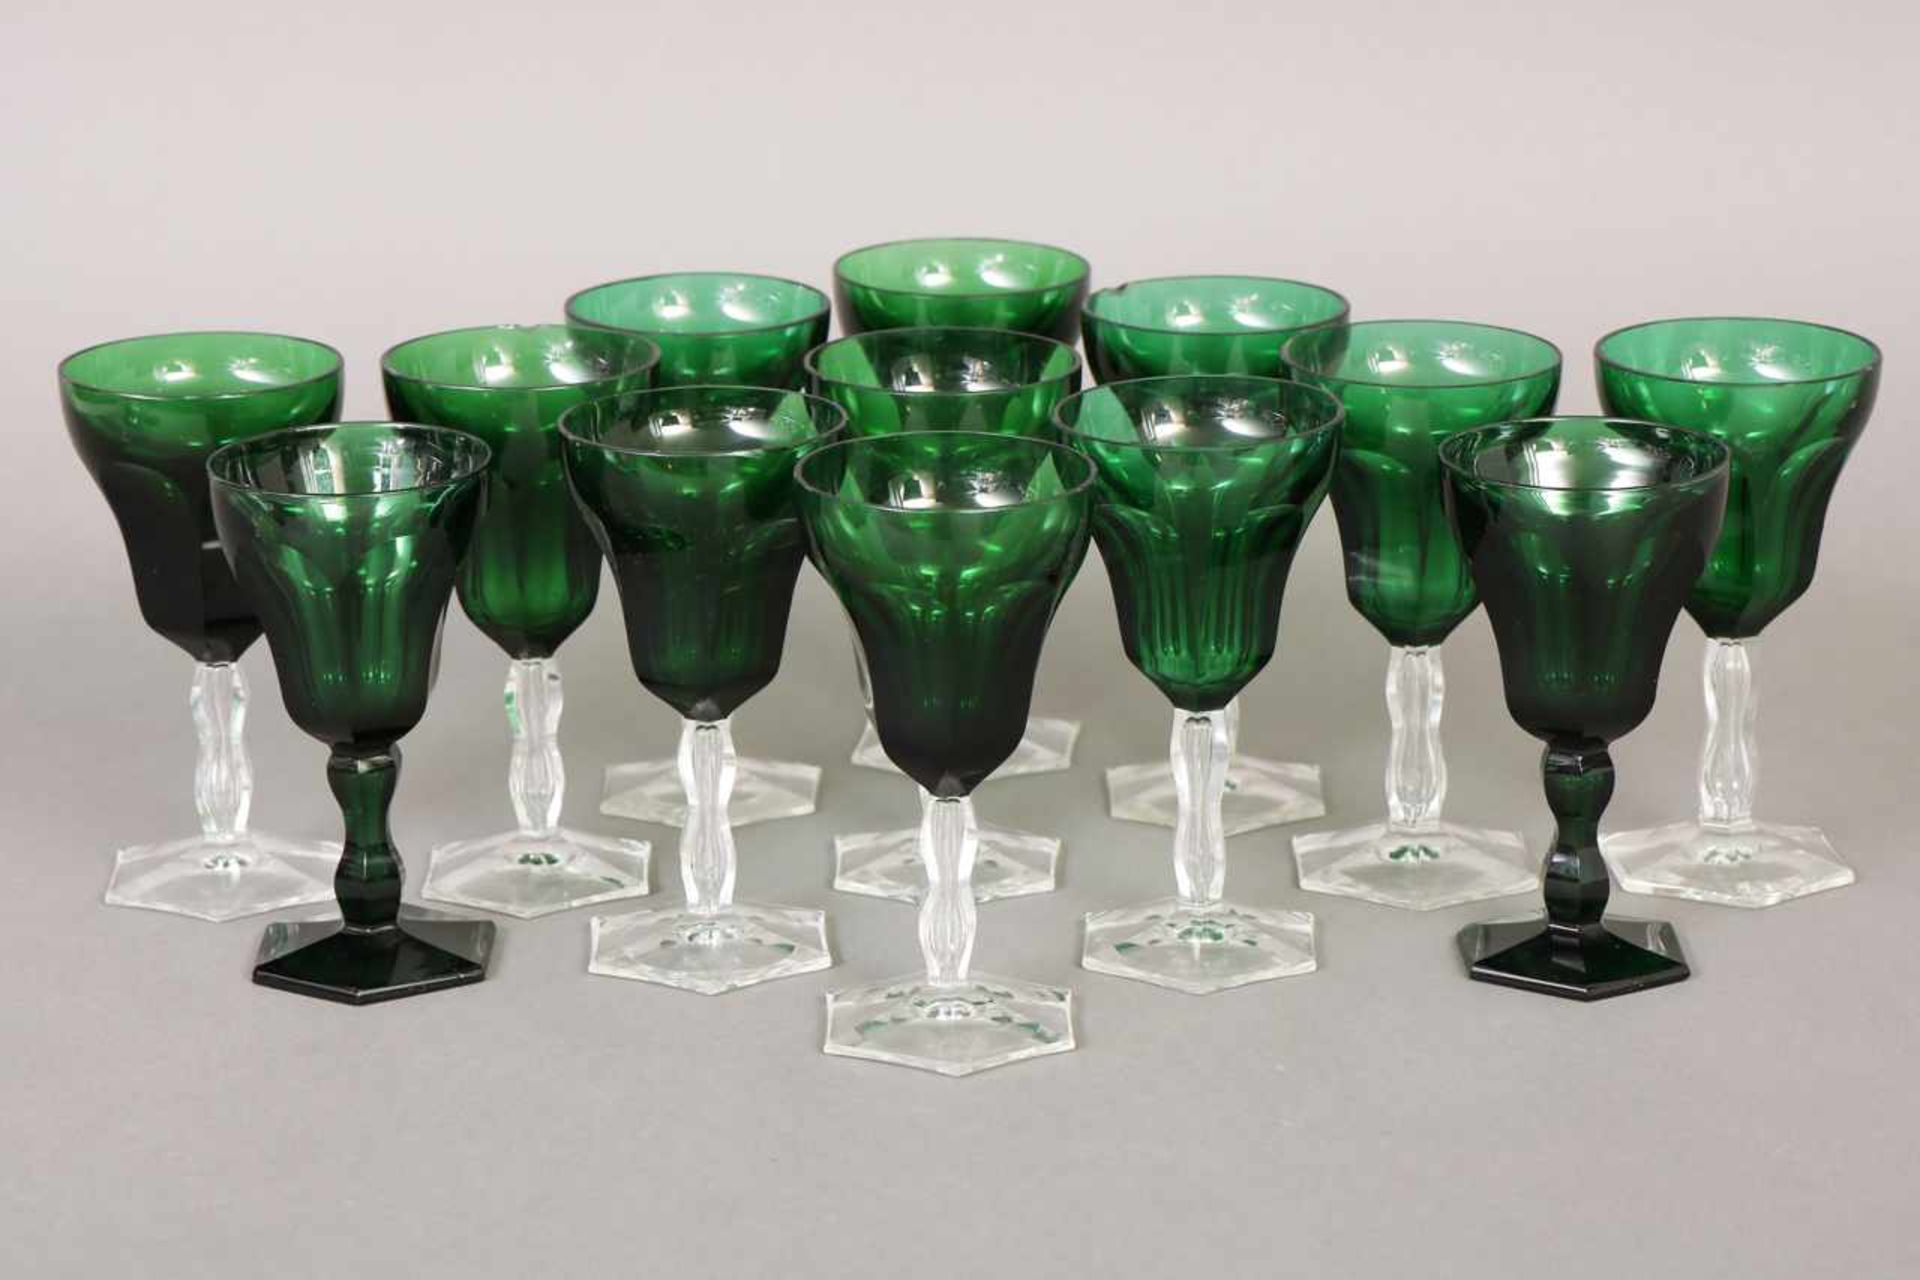 11 Weingläser unbekannte Manufaktur, um 1900, grüne, facettierte Kuppa auf farblosem